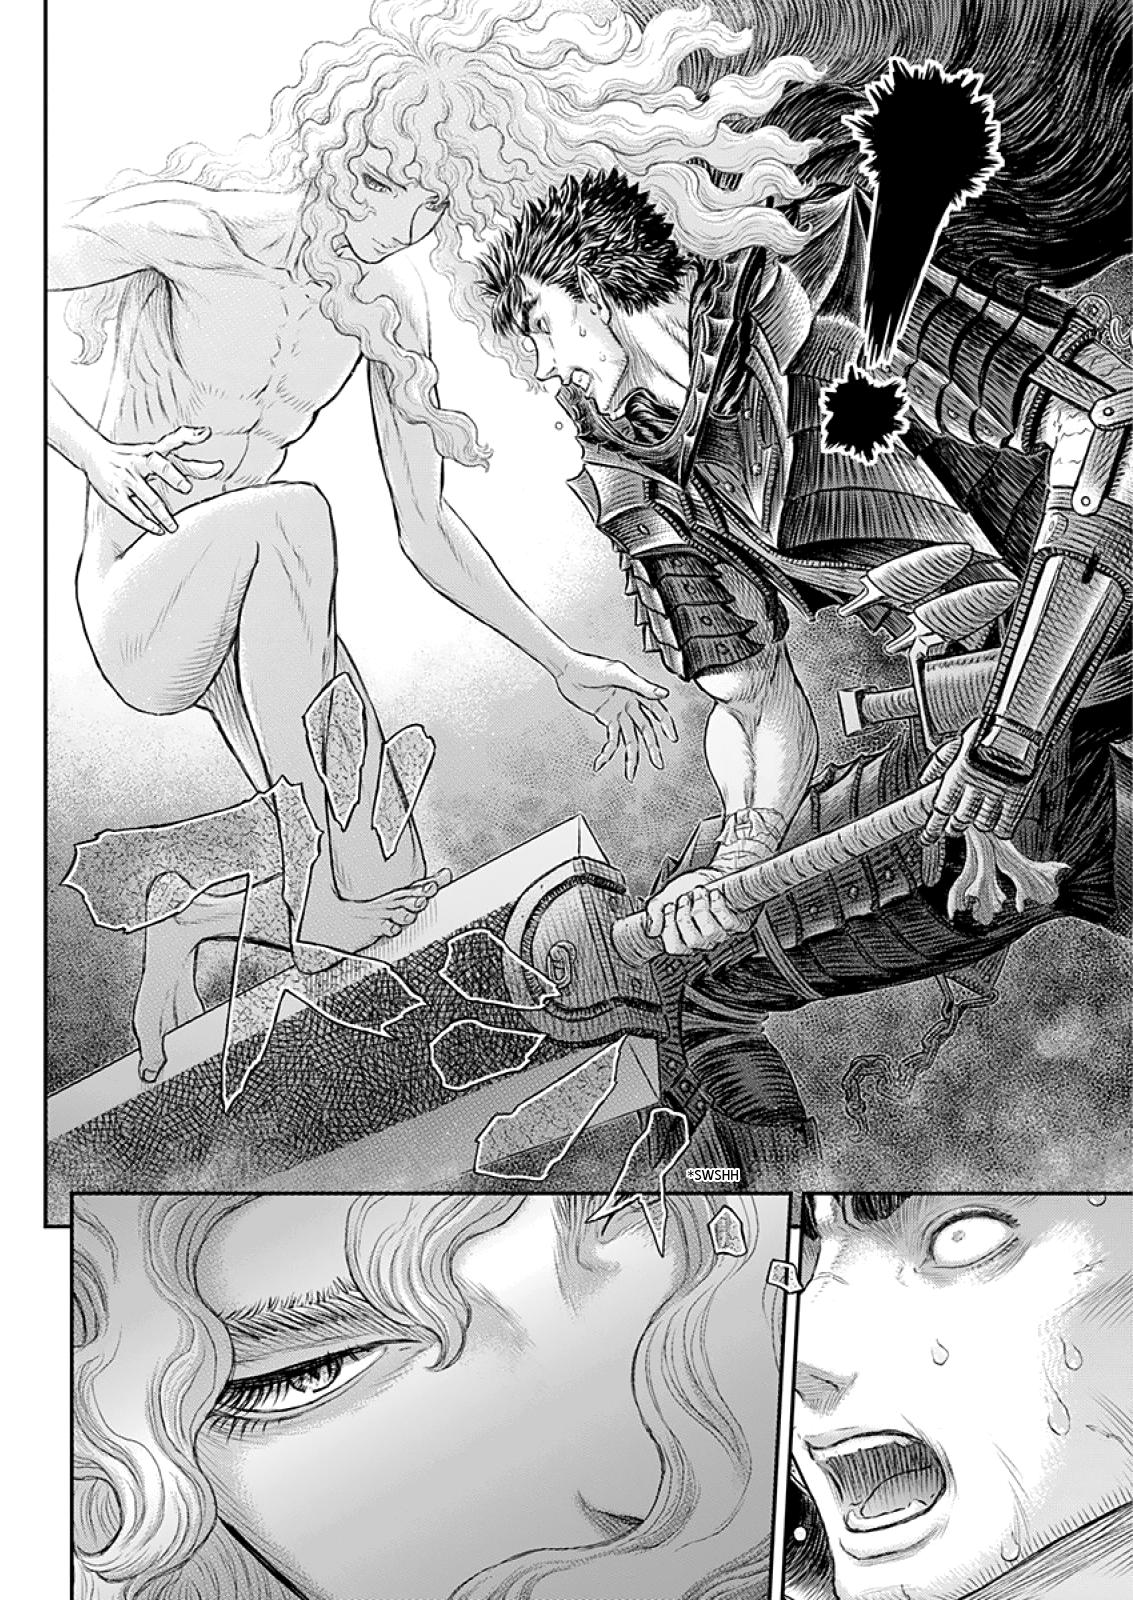 Berserk Manga Chapter 373 image 14